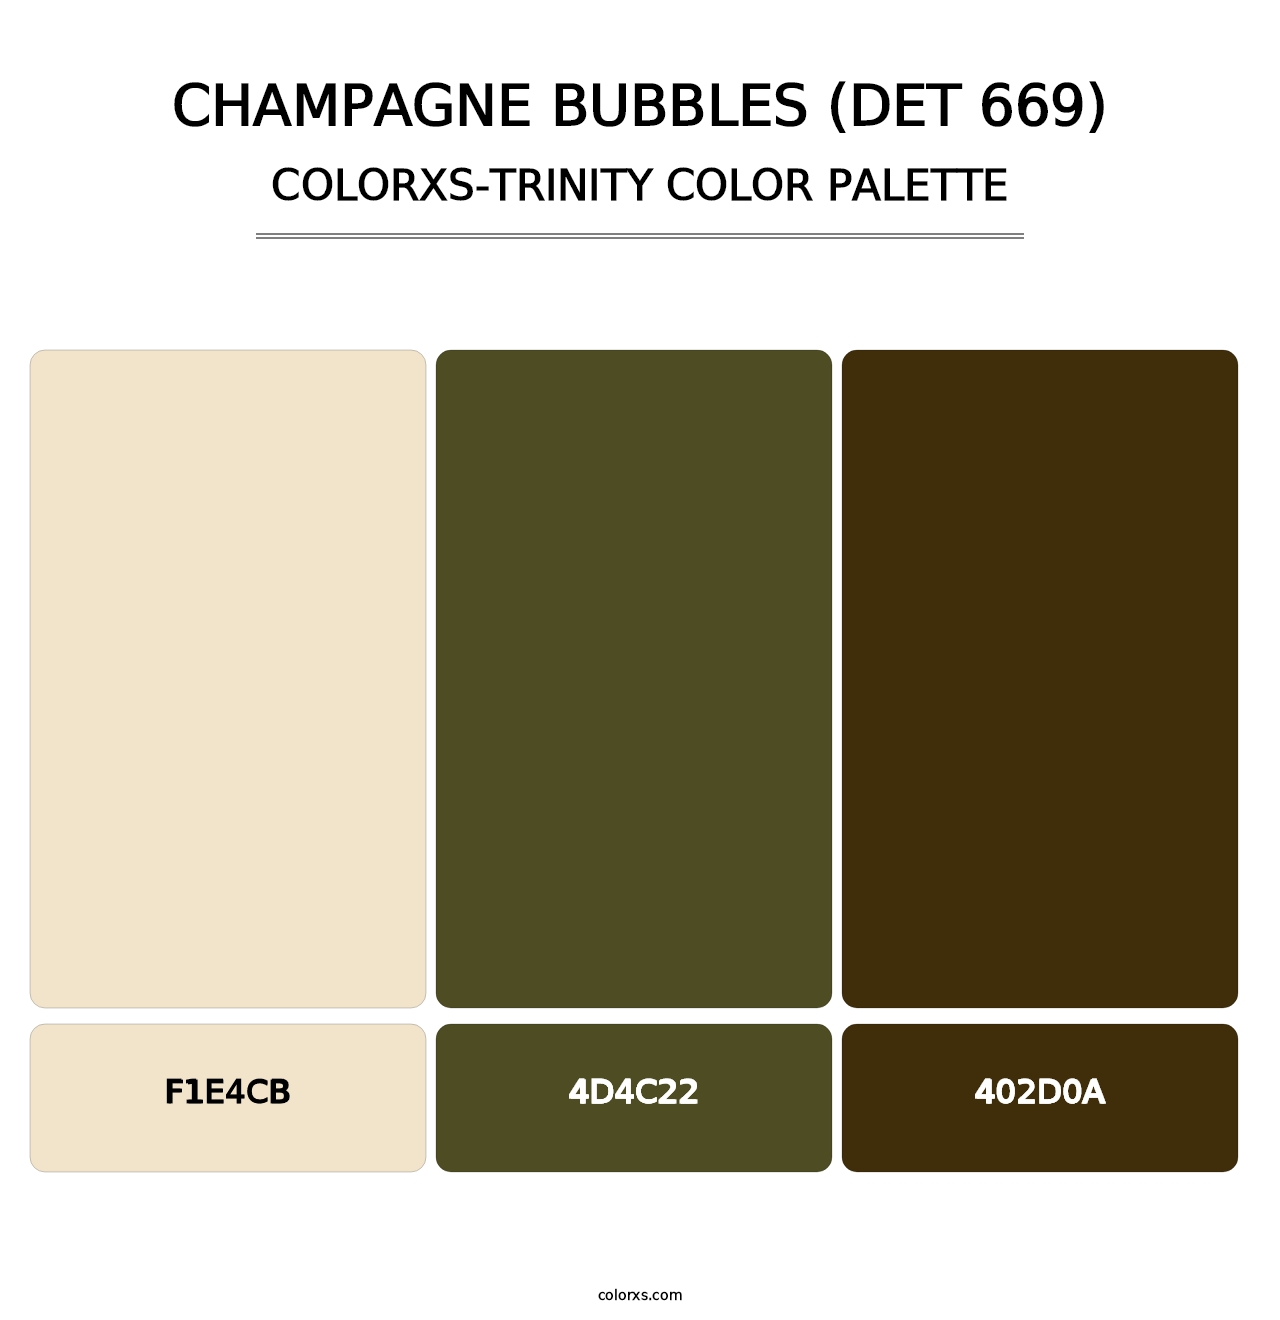 Champagne Bubbles (DET 669) - Colorxs Trinity Palette